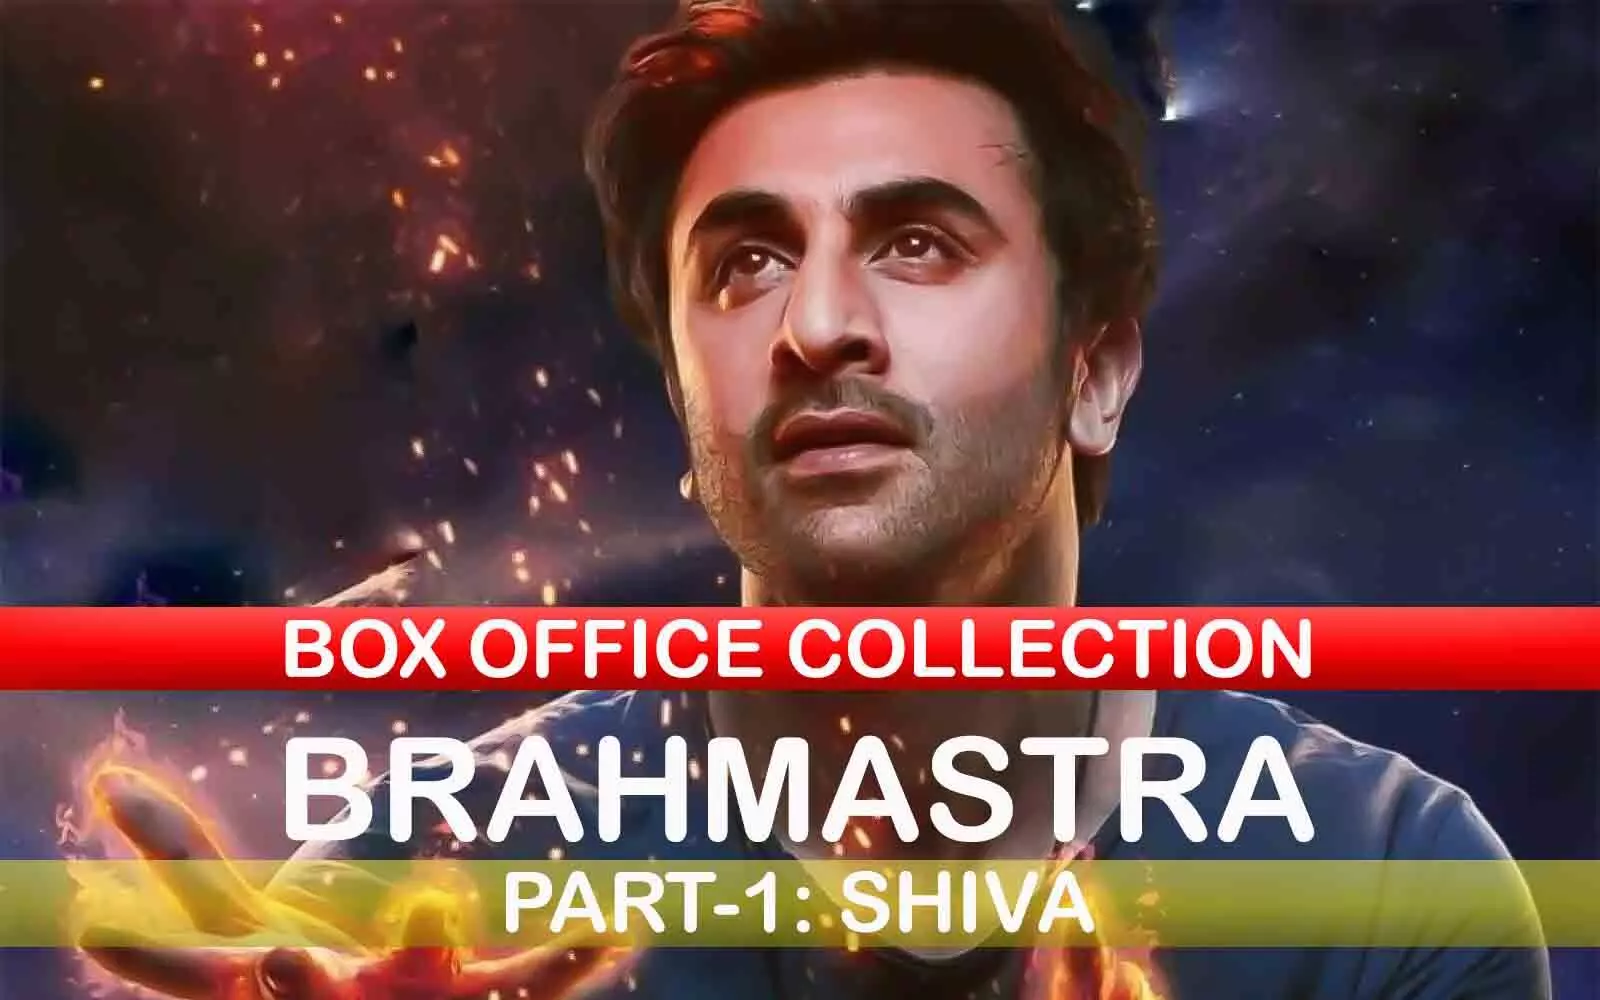 Brahmastra Box Office Collection Day 2: सिनेमाघरों में ब्रह्मास्त्र का दूसरे दिन भी धमाल जारी, रणबीर- आलिया की फिल्म ने कितनी कमाई की